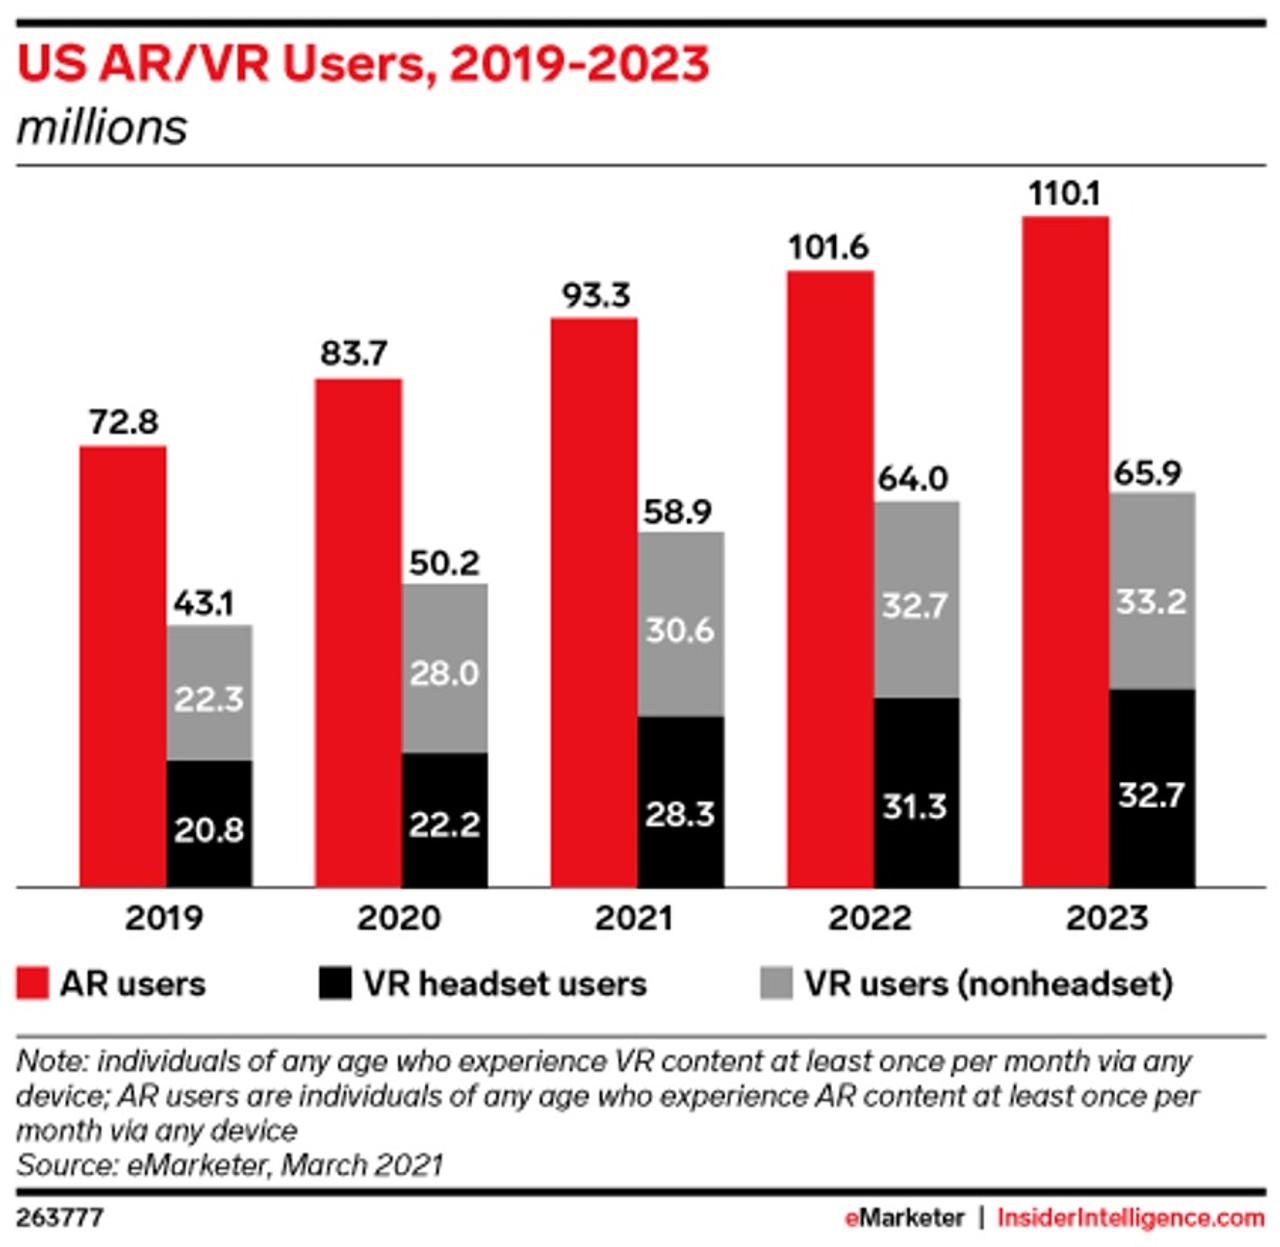 アメリカにおけるAR及びVRコンテンツのユーザー数の推移と予測。